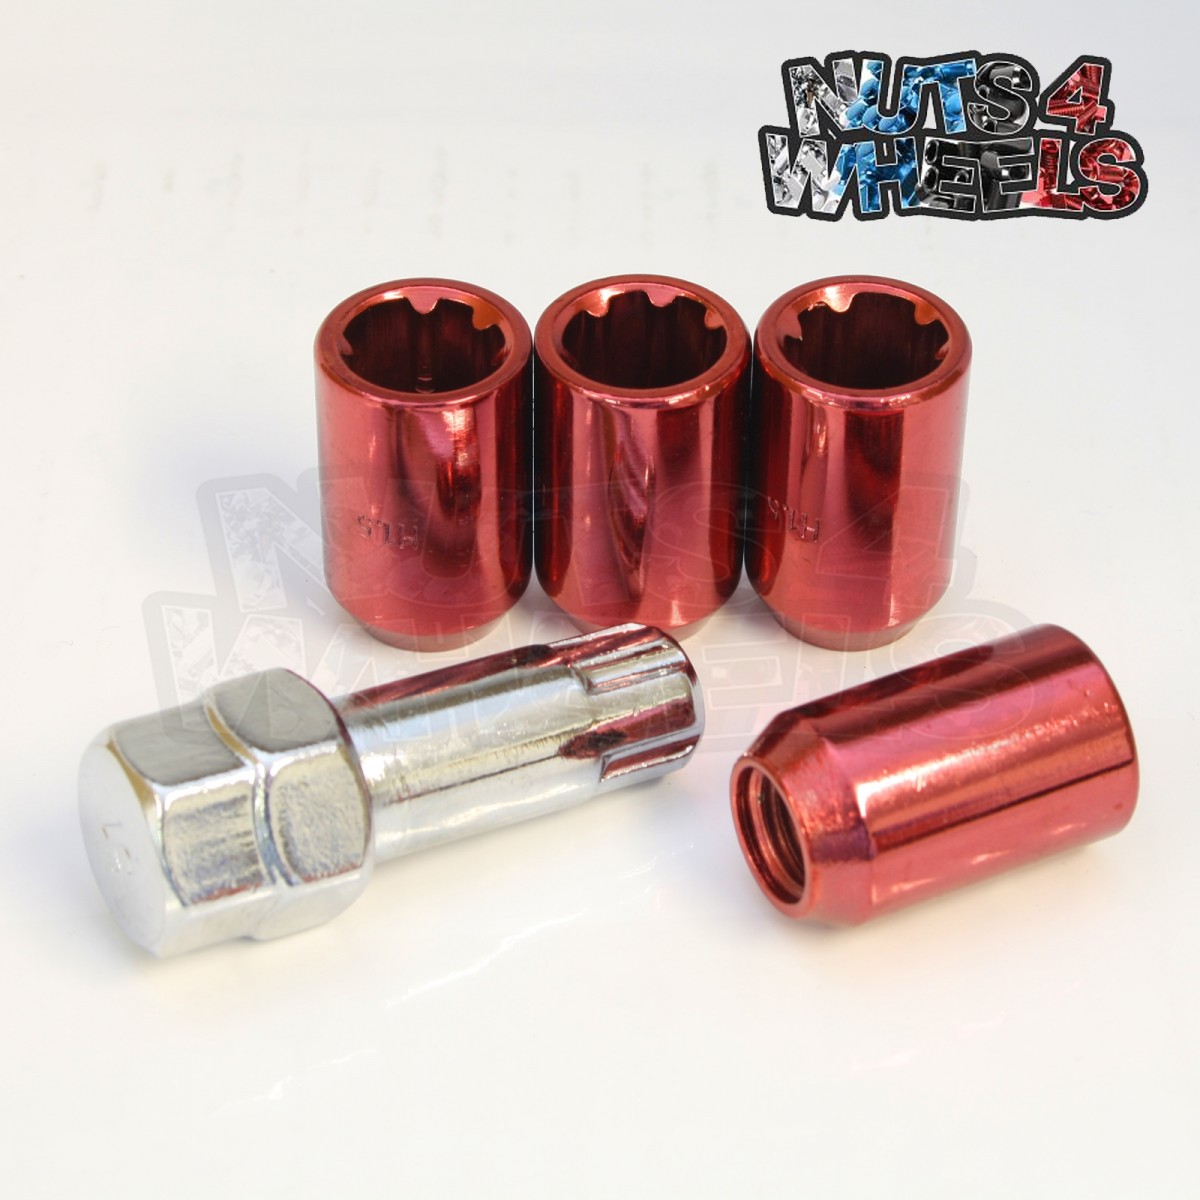 Locking nuts, TUNER, M12, X1.25, RED , 60d x 4 c/w key